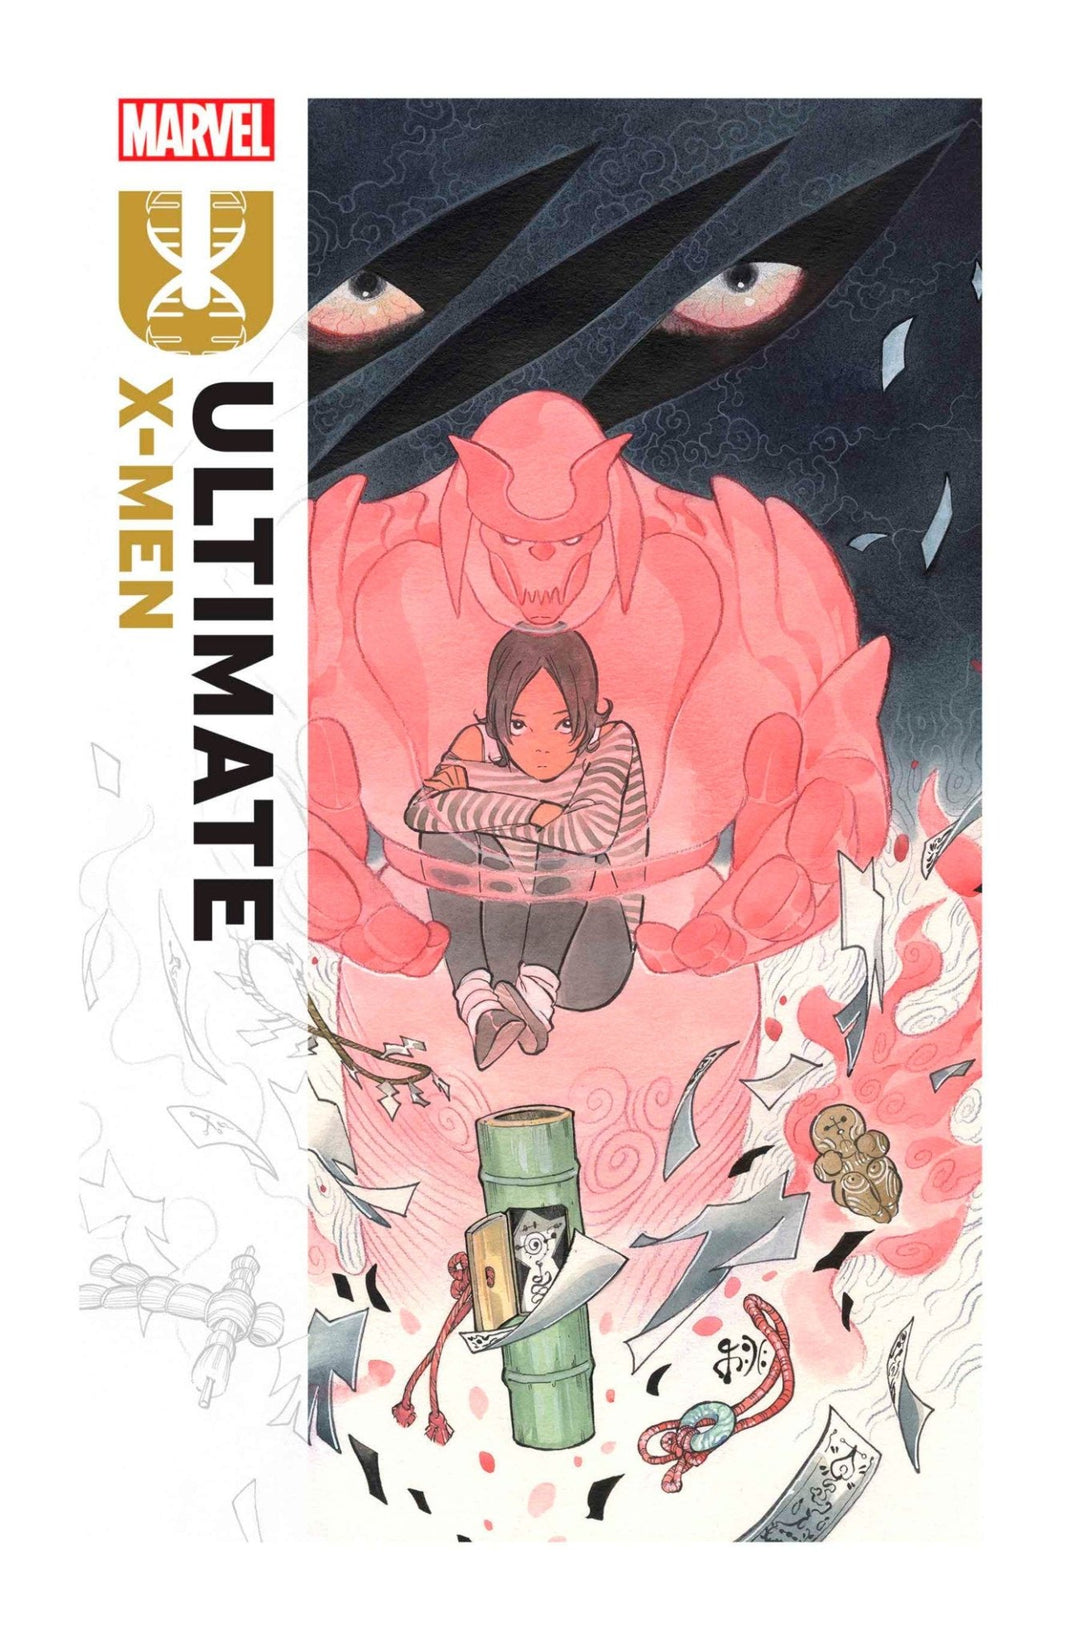 Ultimate X-Men #1 - gabescaveccc